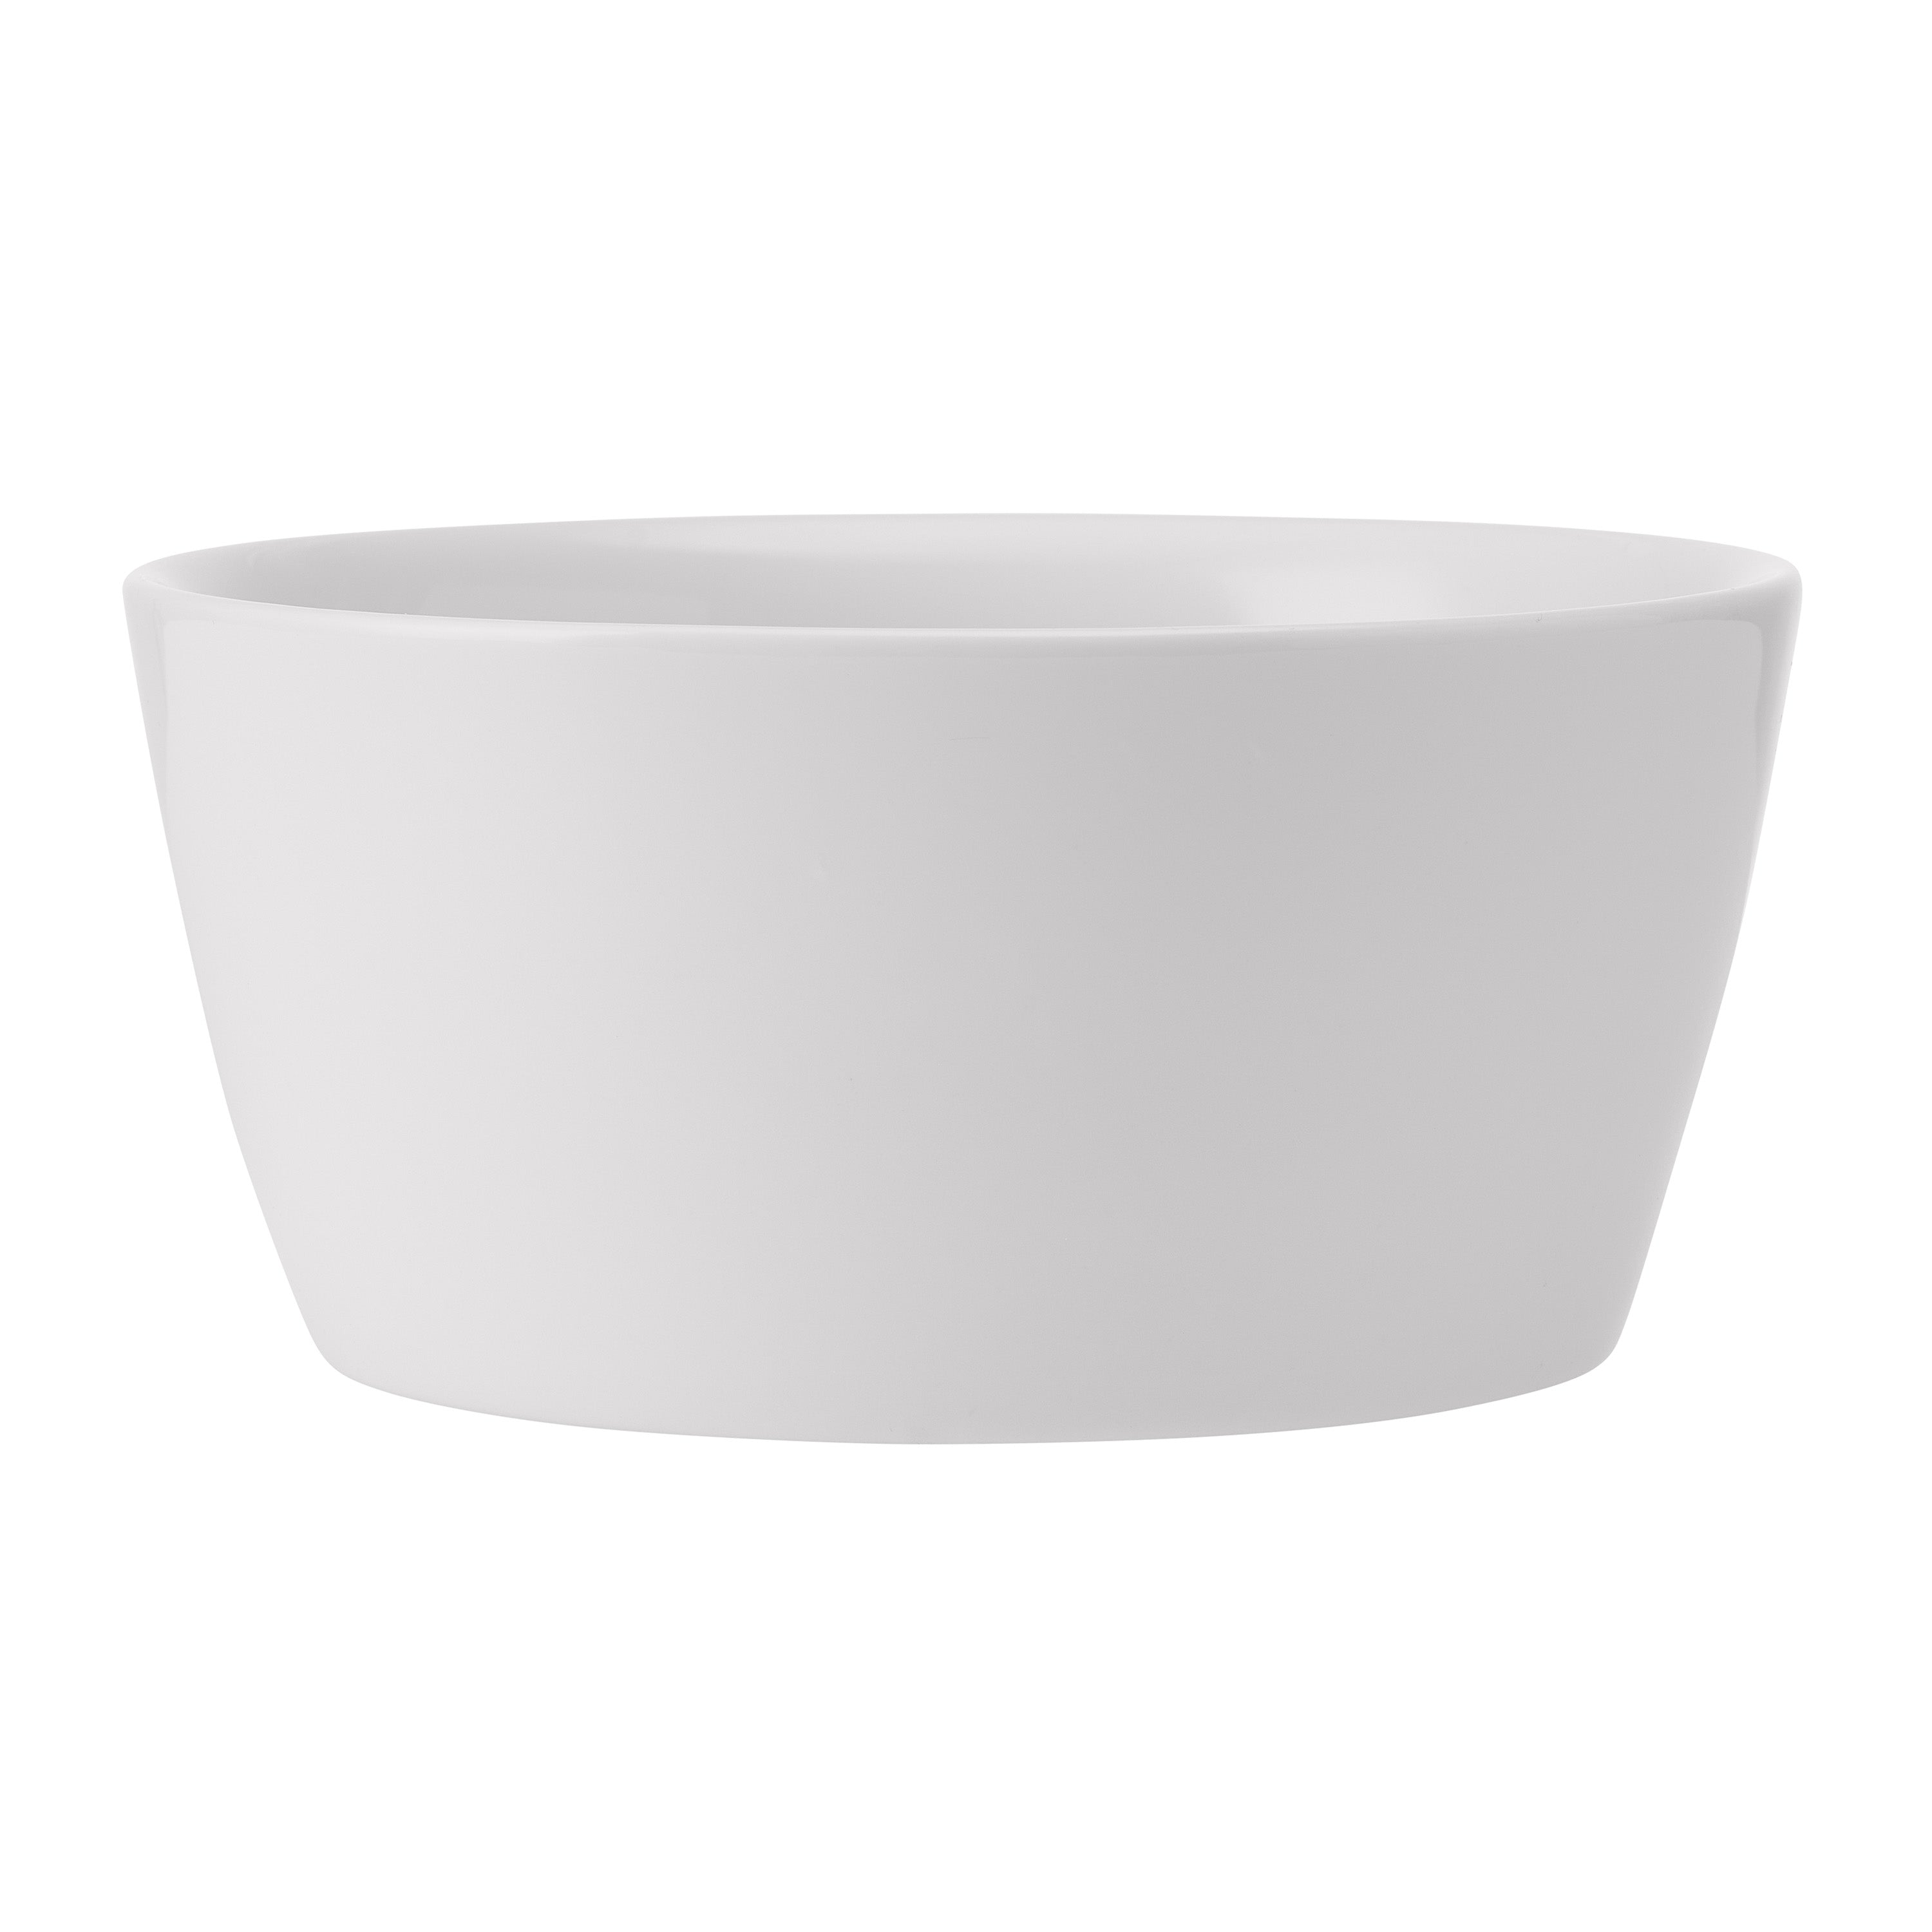 Specials Porcelain Bowl 5.8" / 26oz White